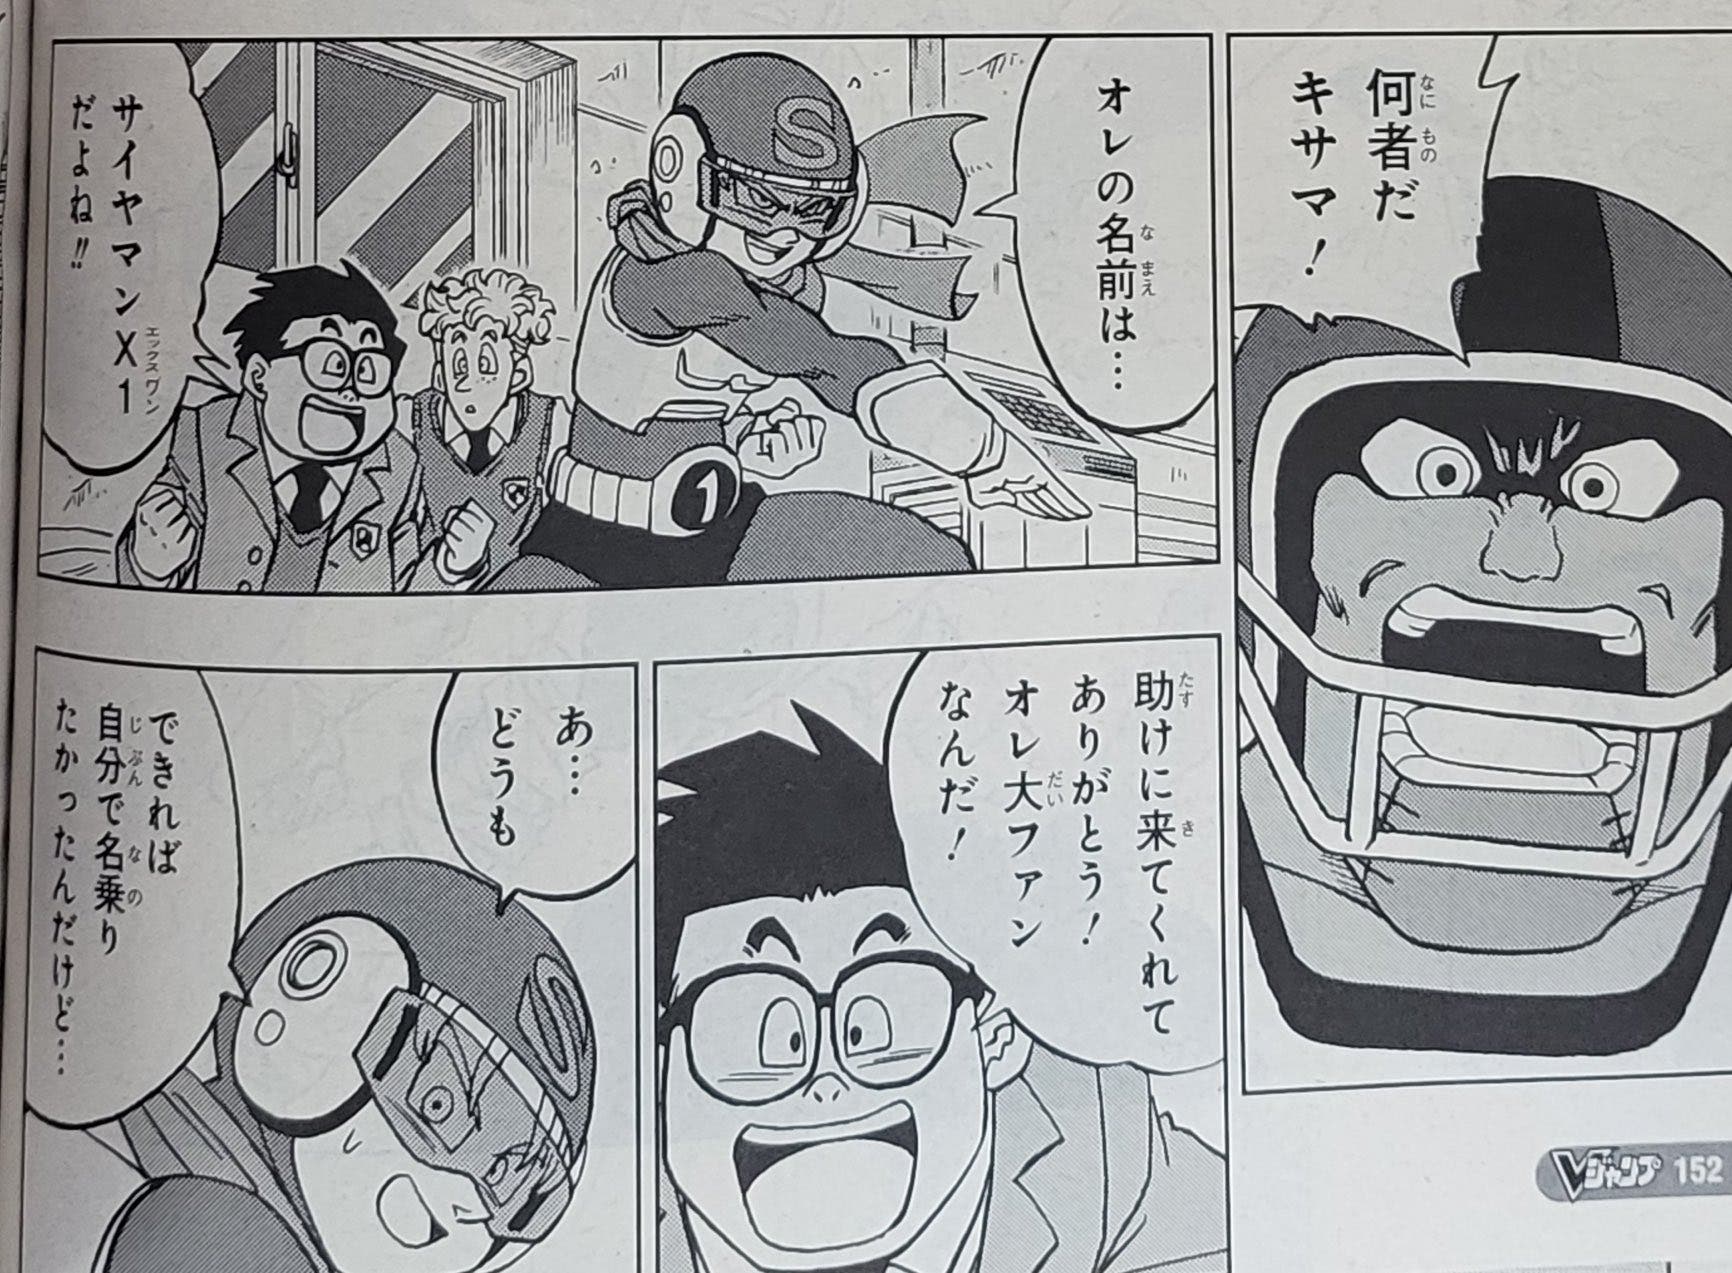 Manga 88 de Dragon Ball Super revela una debilidad inesperada de Trunks